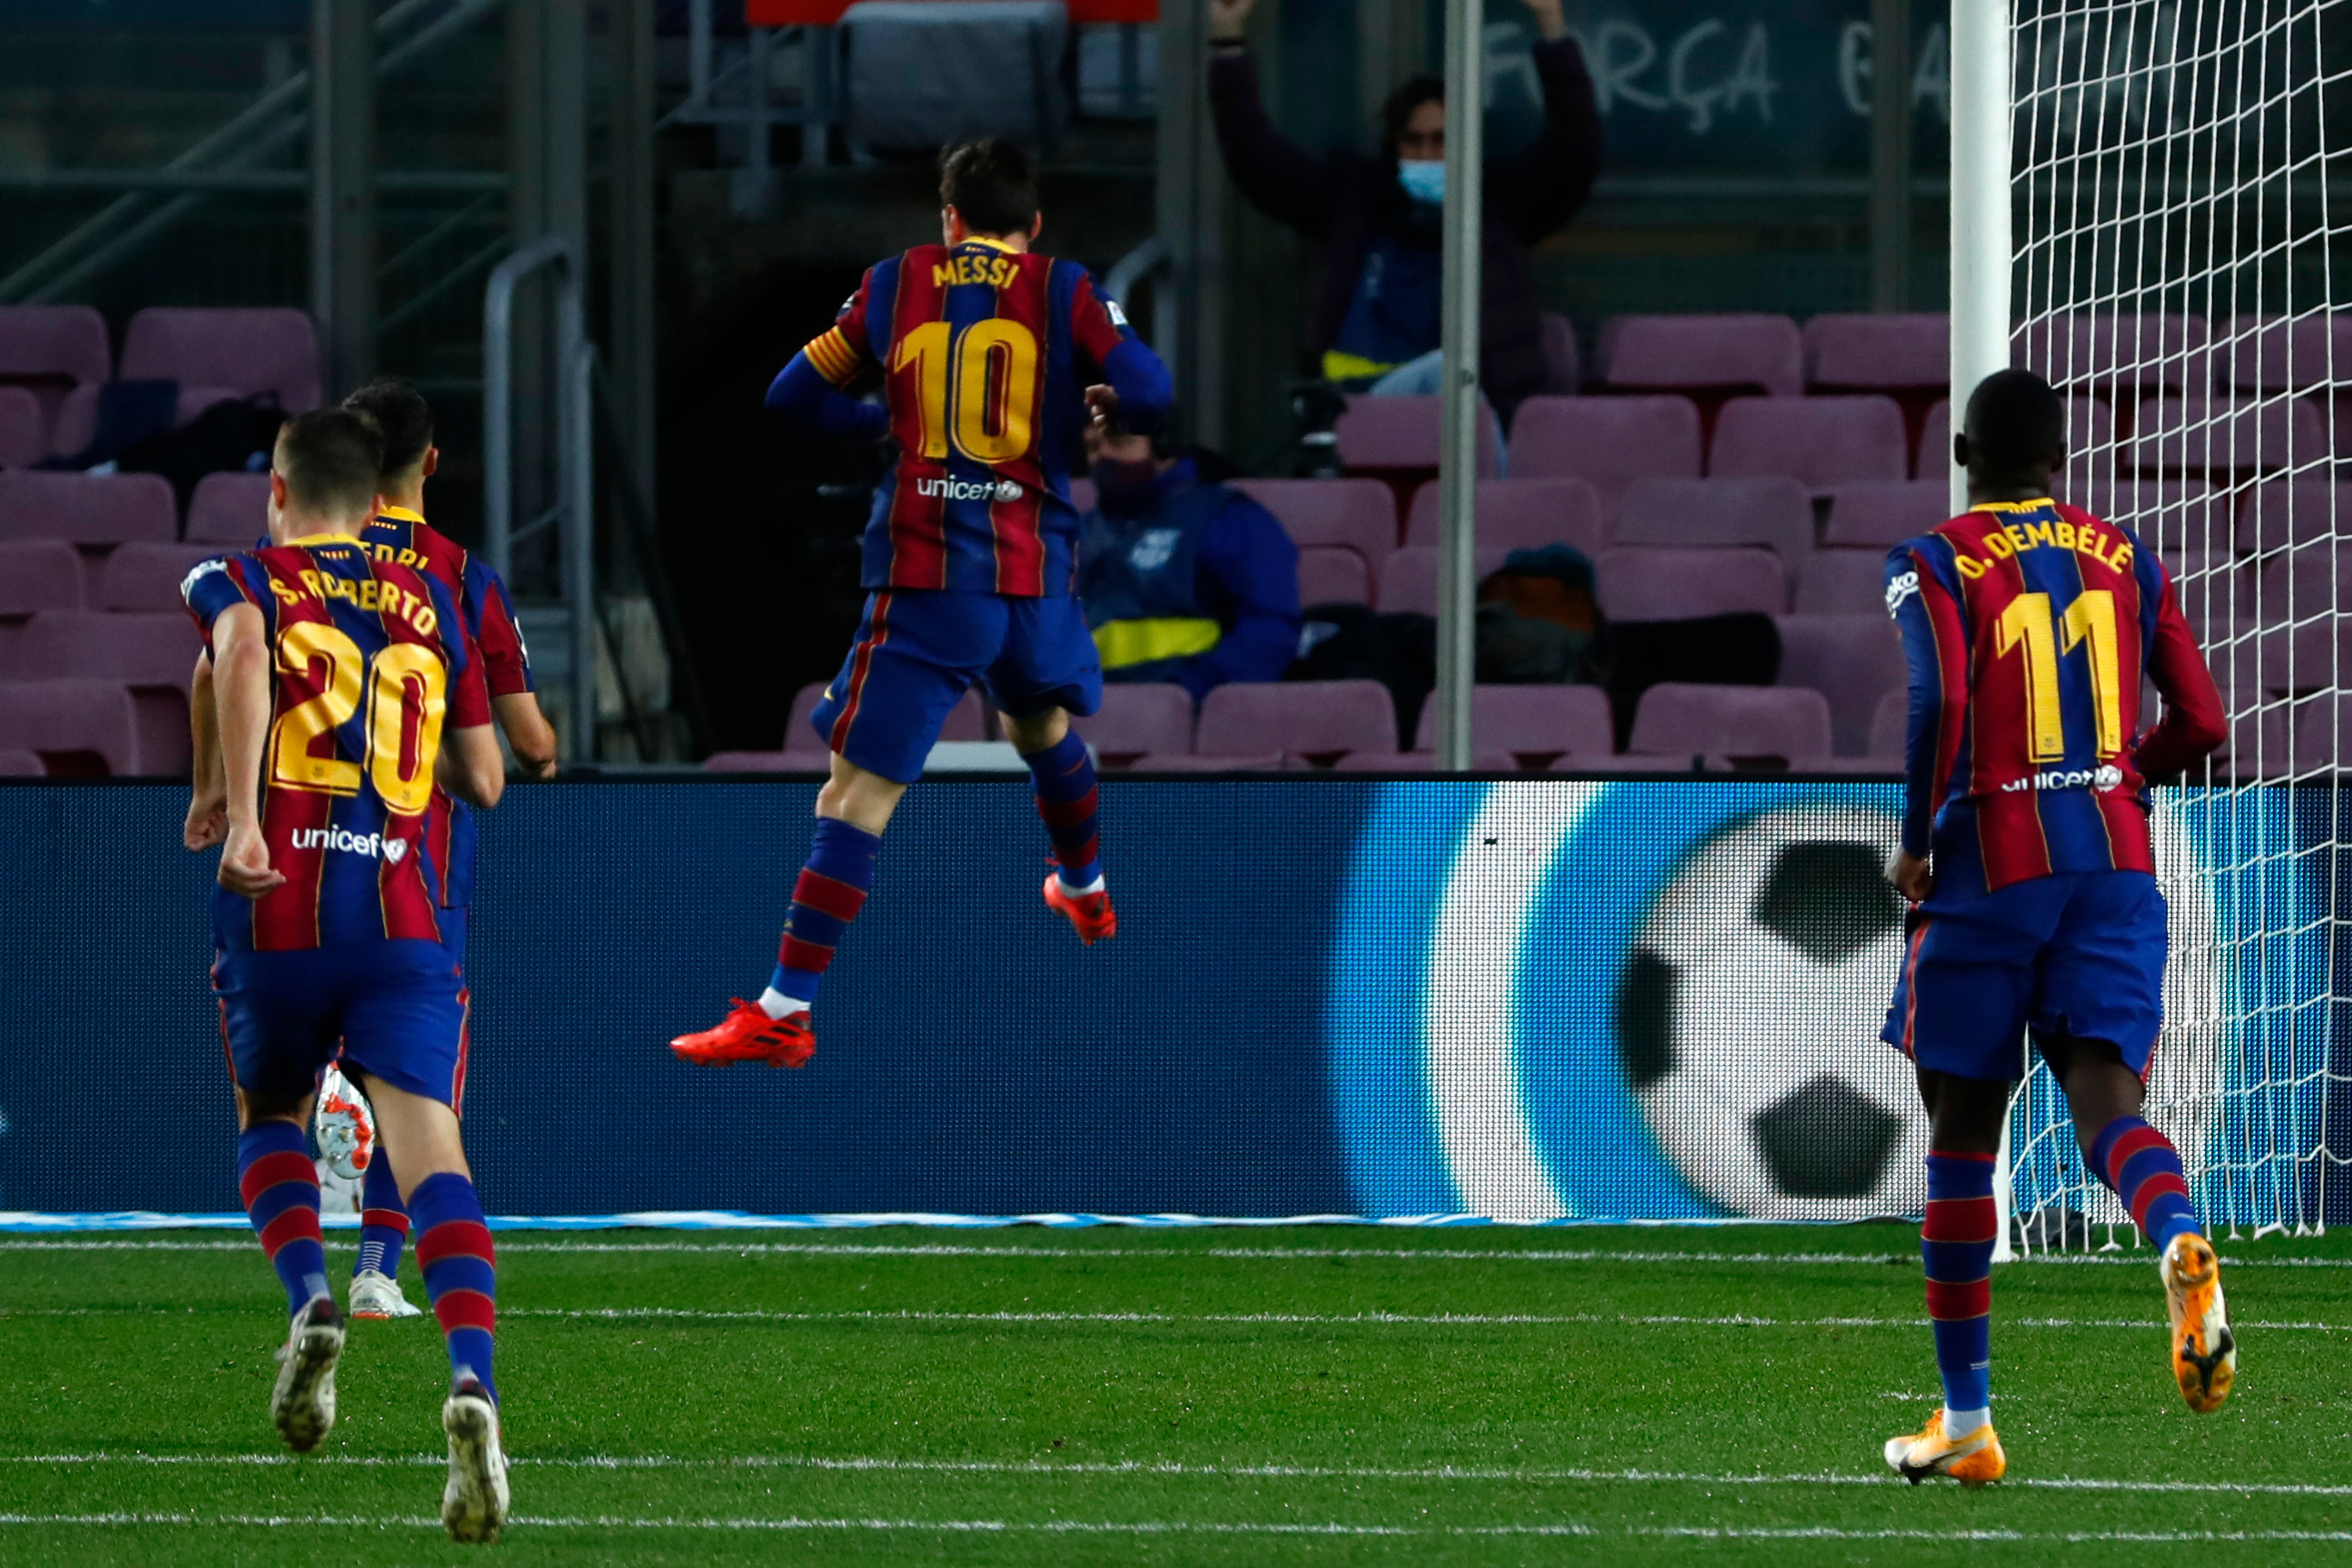 El astro argentino Lionel Messi (10) festeja tras anotar el tercer gol del Barcelona en el partido por la Liga ante el Betis, en el Camp Nou de Barcelona, España, el sábado 7 de noviembre de 2020.